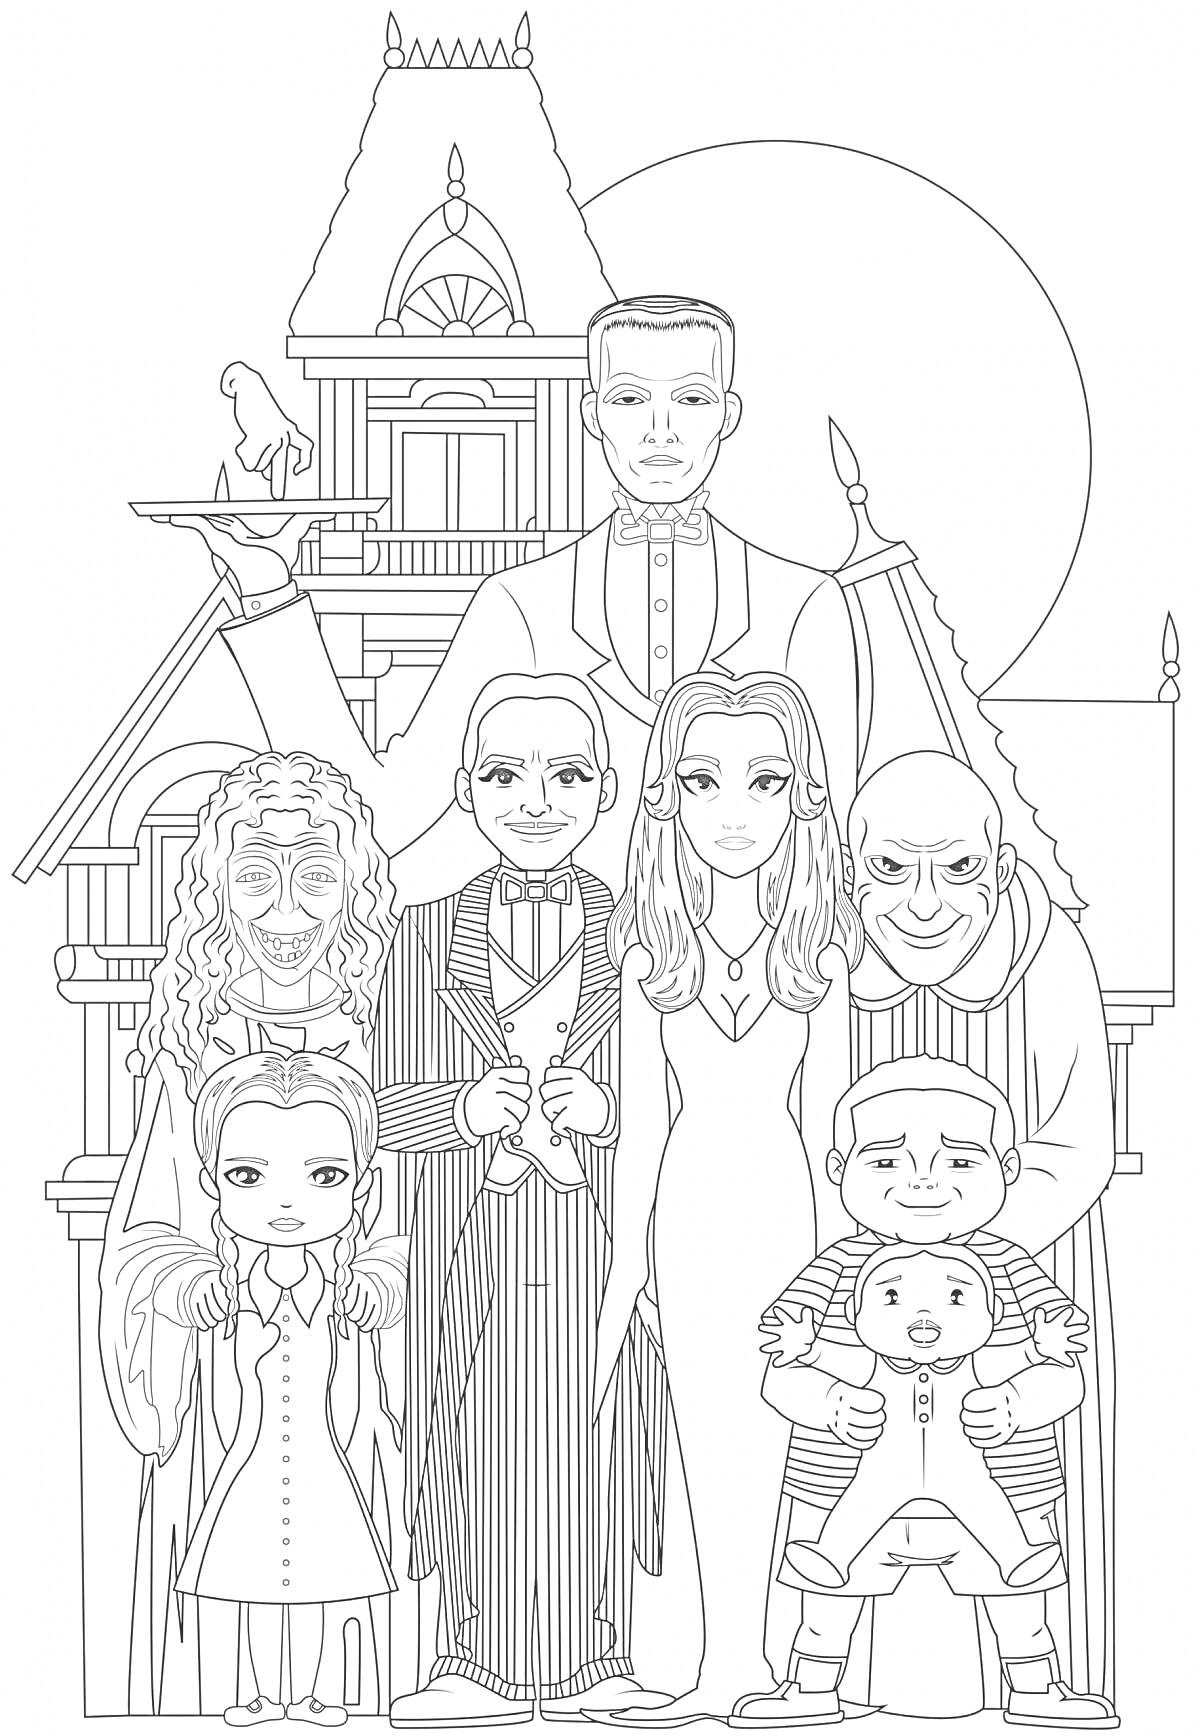 Семейка Аддамс перед домом с изображением всех членов семьи и характерными элементами